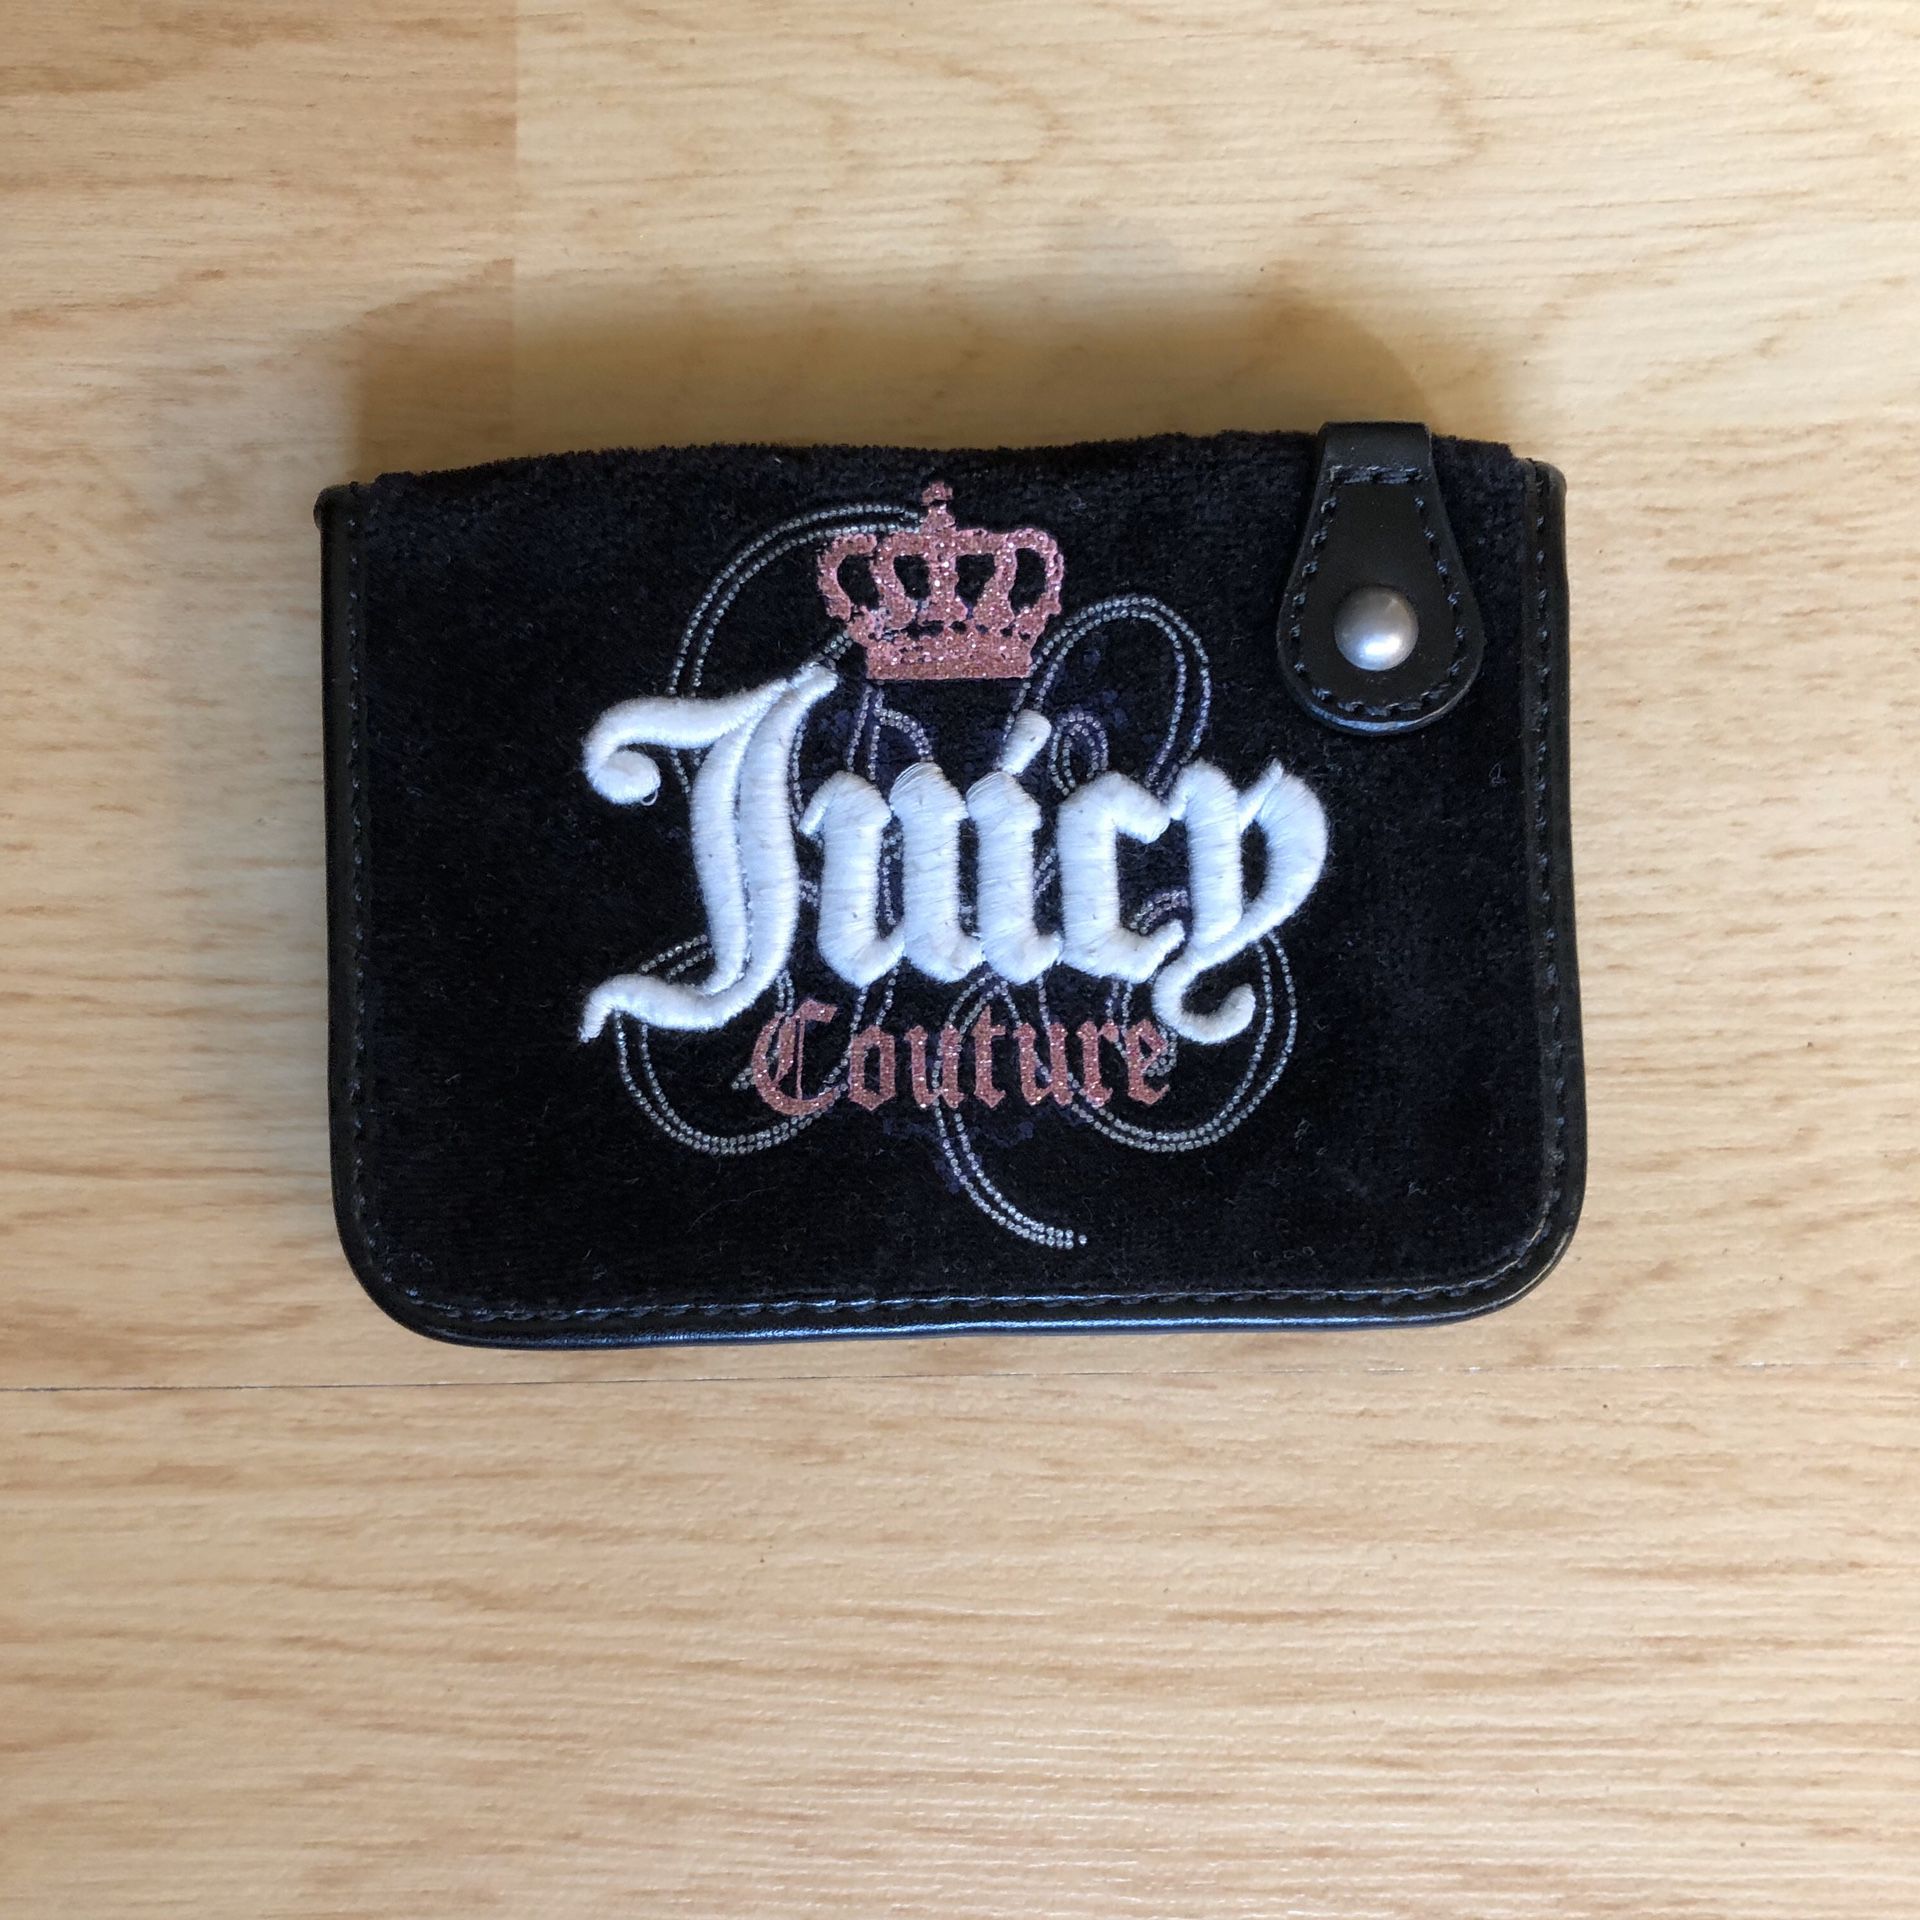 Juicy wallet